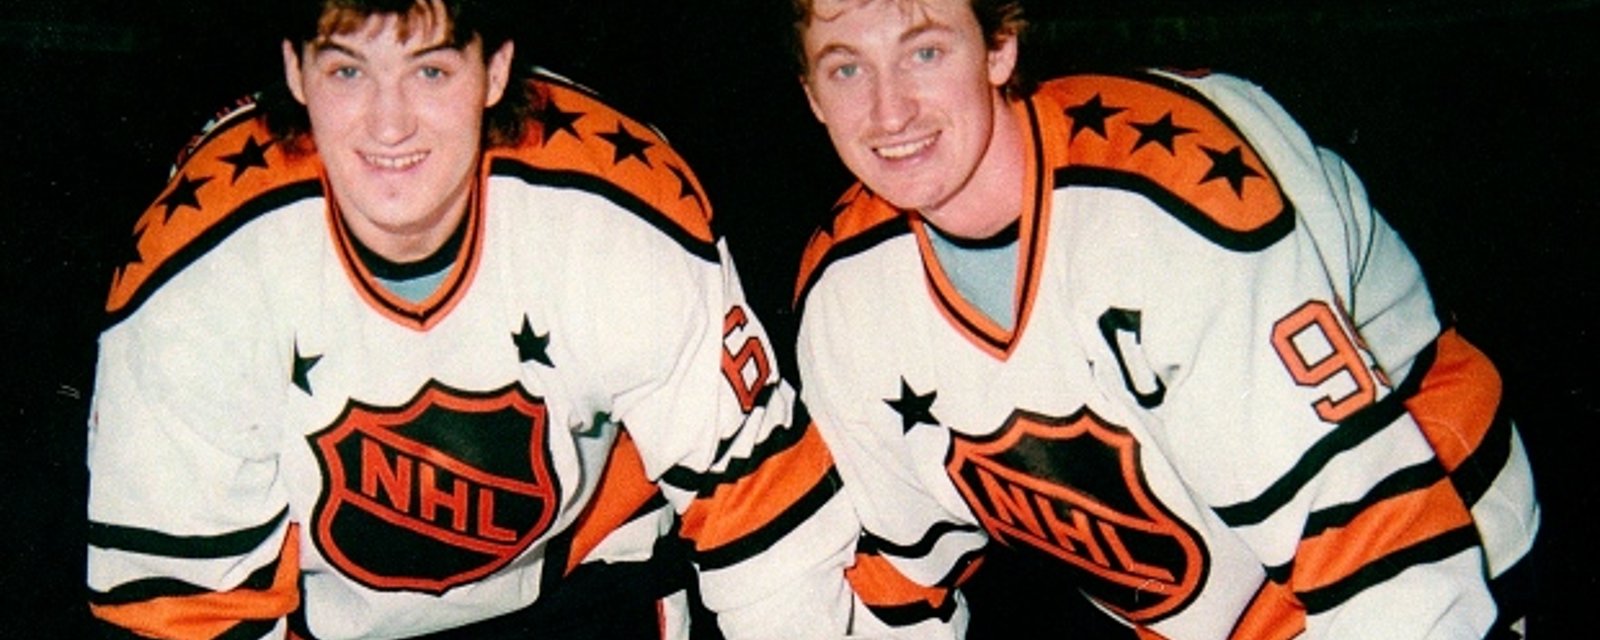 Robert Lang raconte une anecdote surprenante à propos de Wayne Gretzky et Mario Lemieux